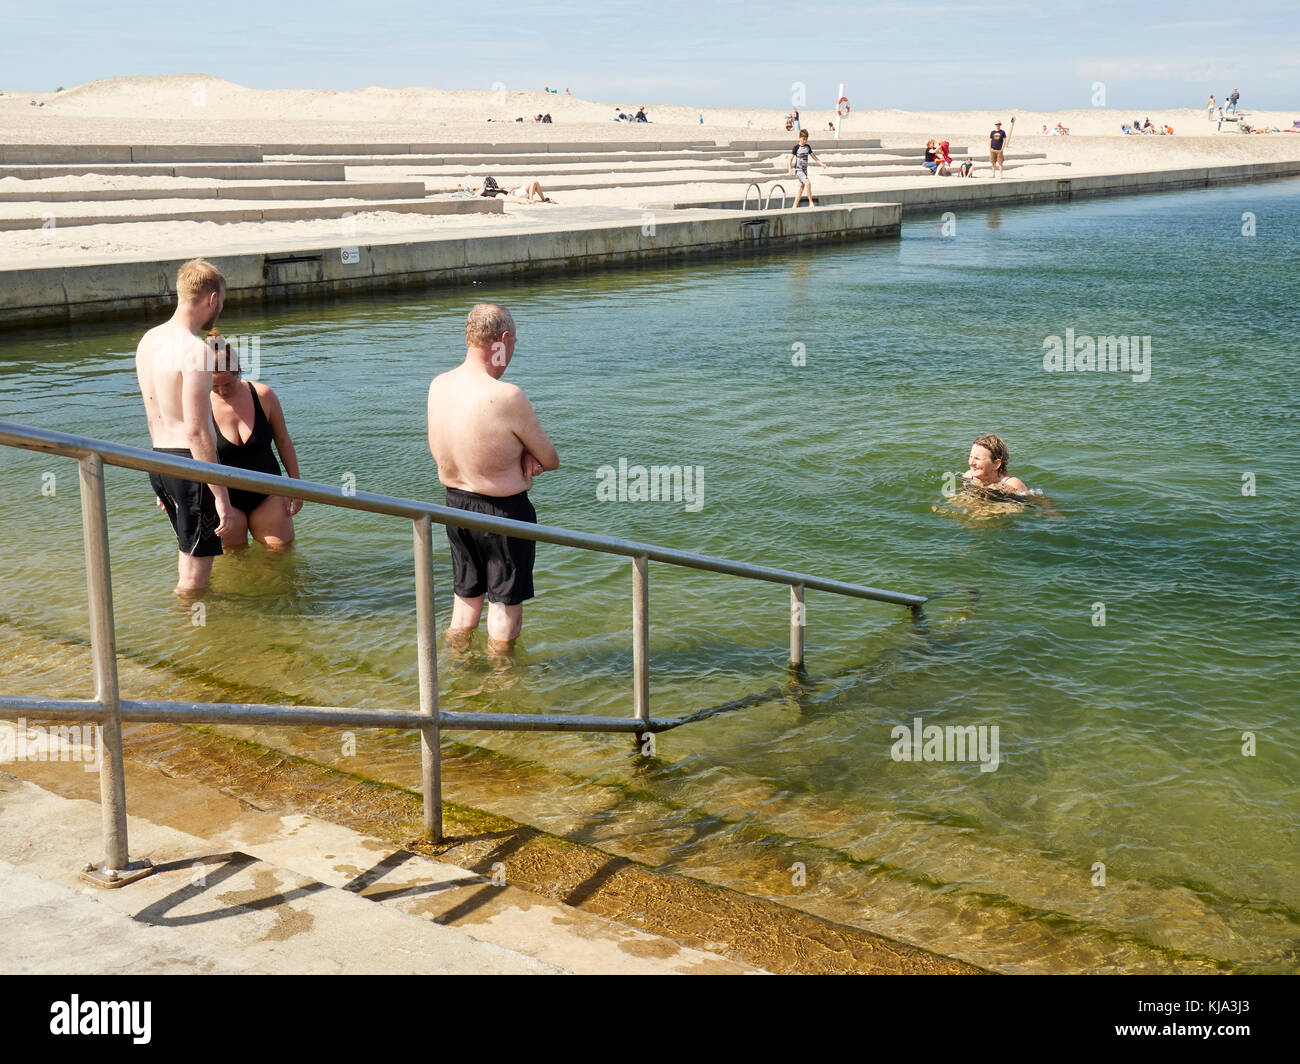 Personnes piscine en plein air Piscine d'eau salée, Nr. Vorupør, Danemark Banque D'Images